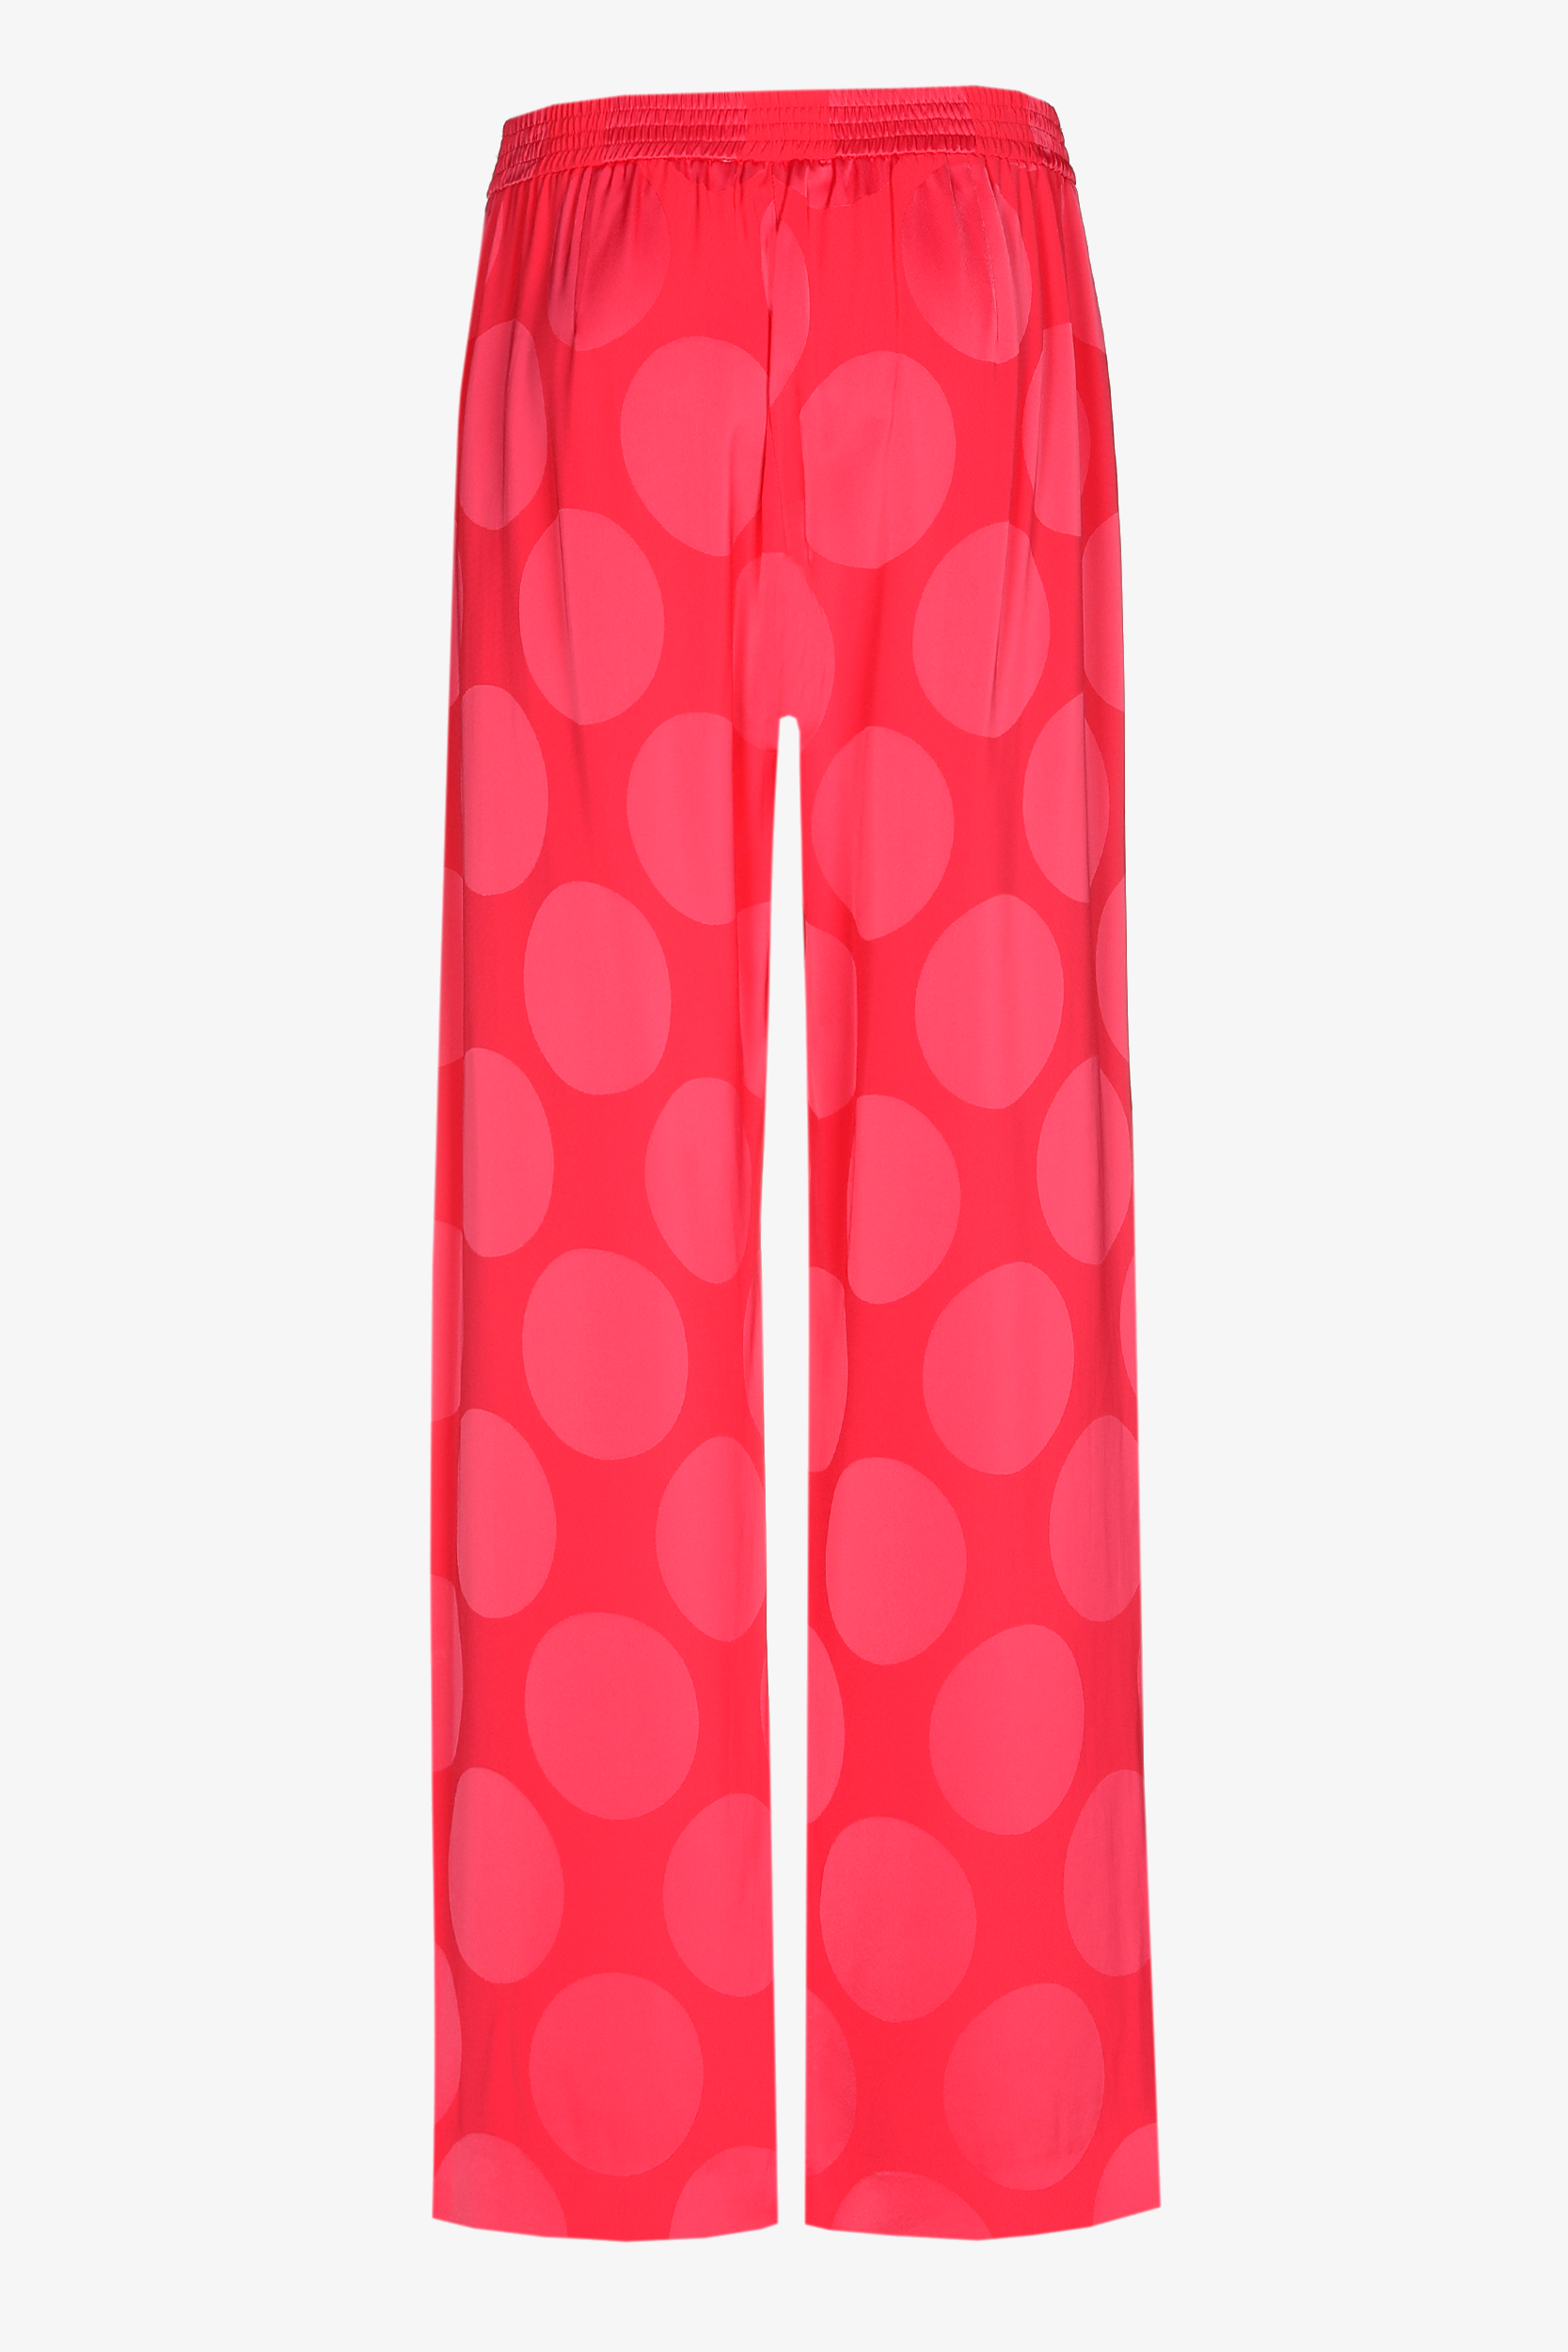 Matt trousers with shiny pattern